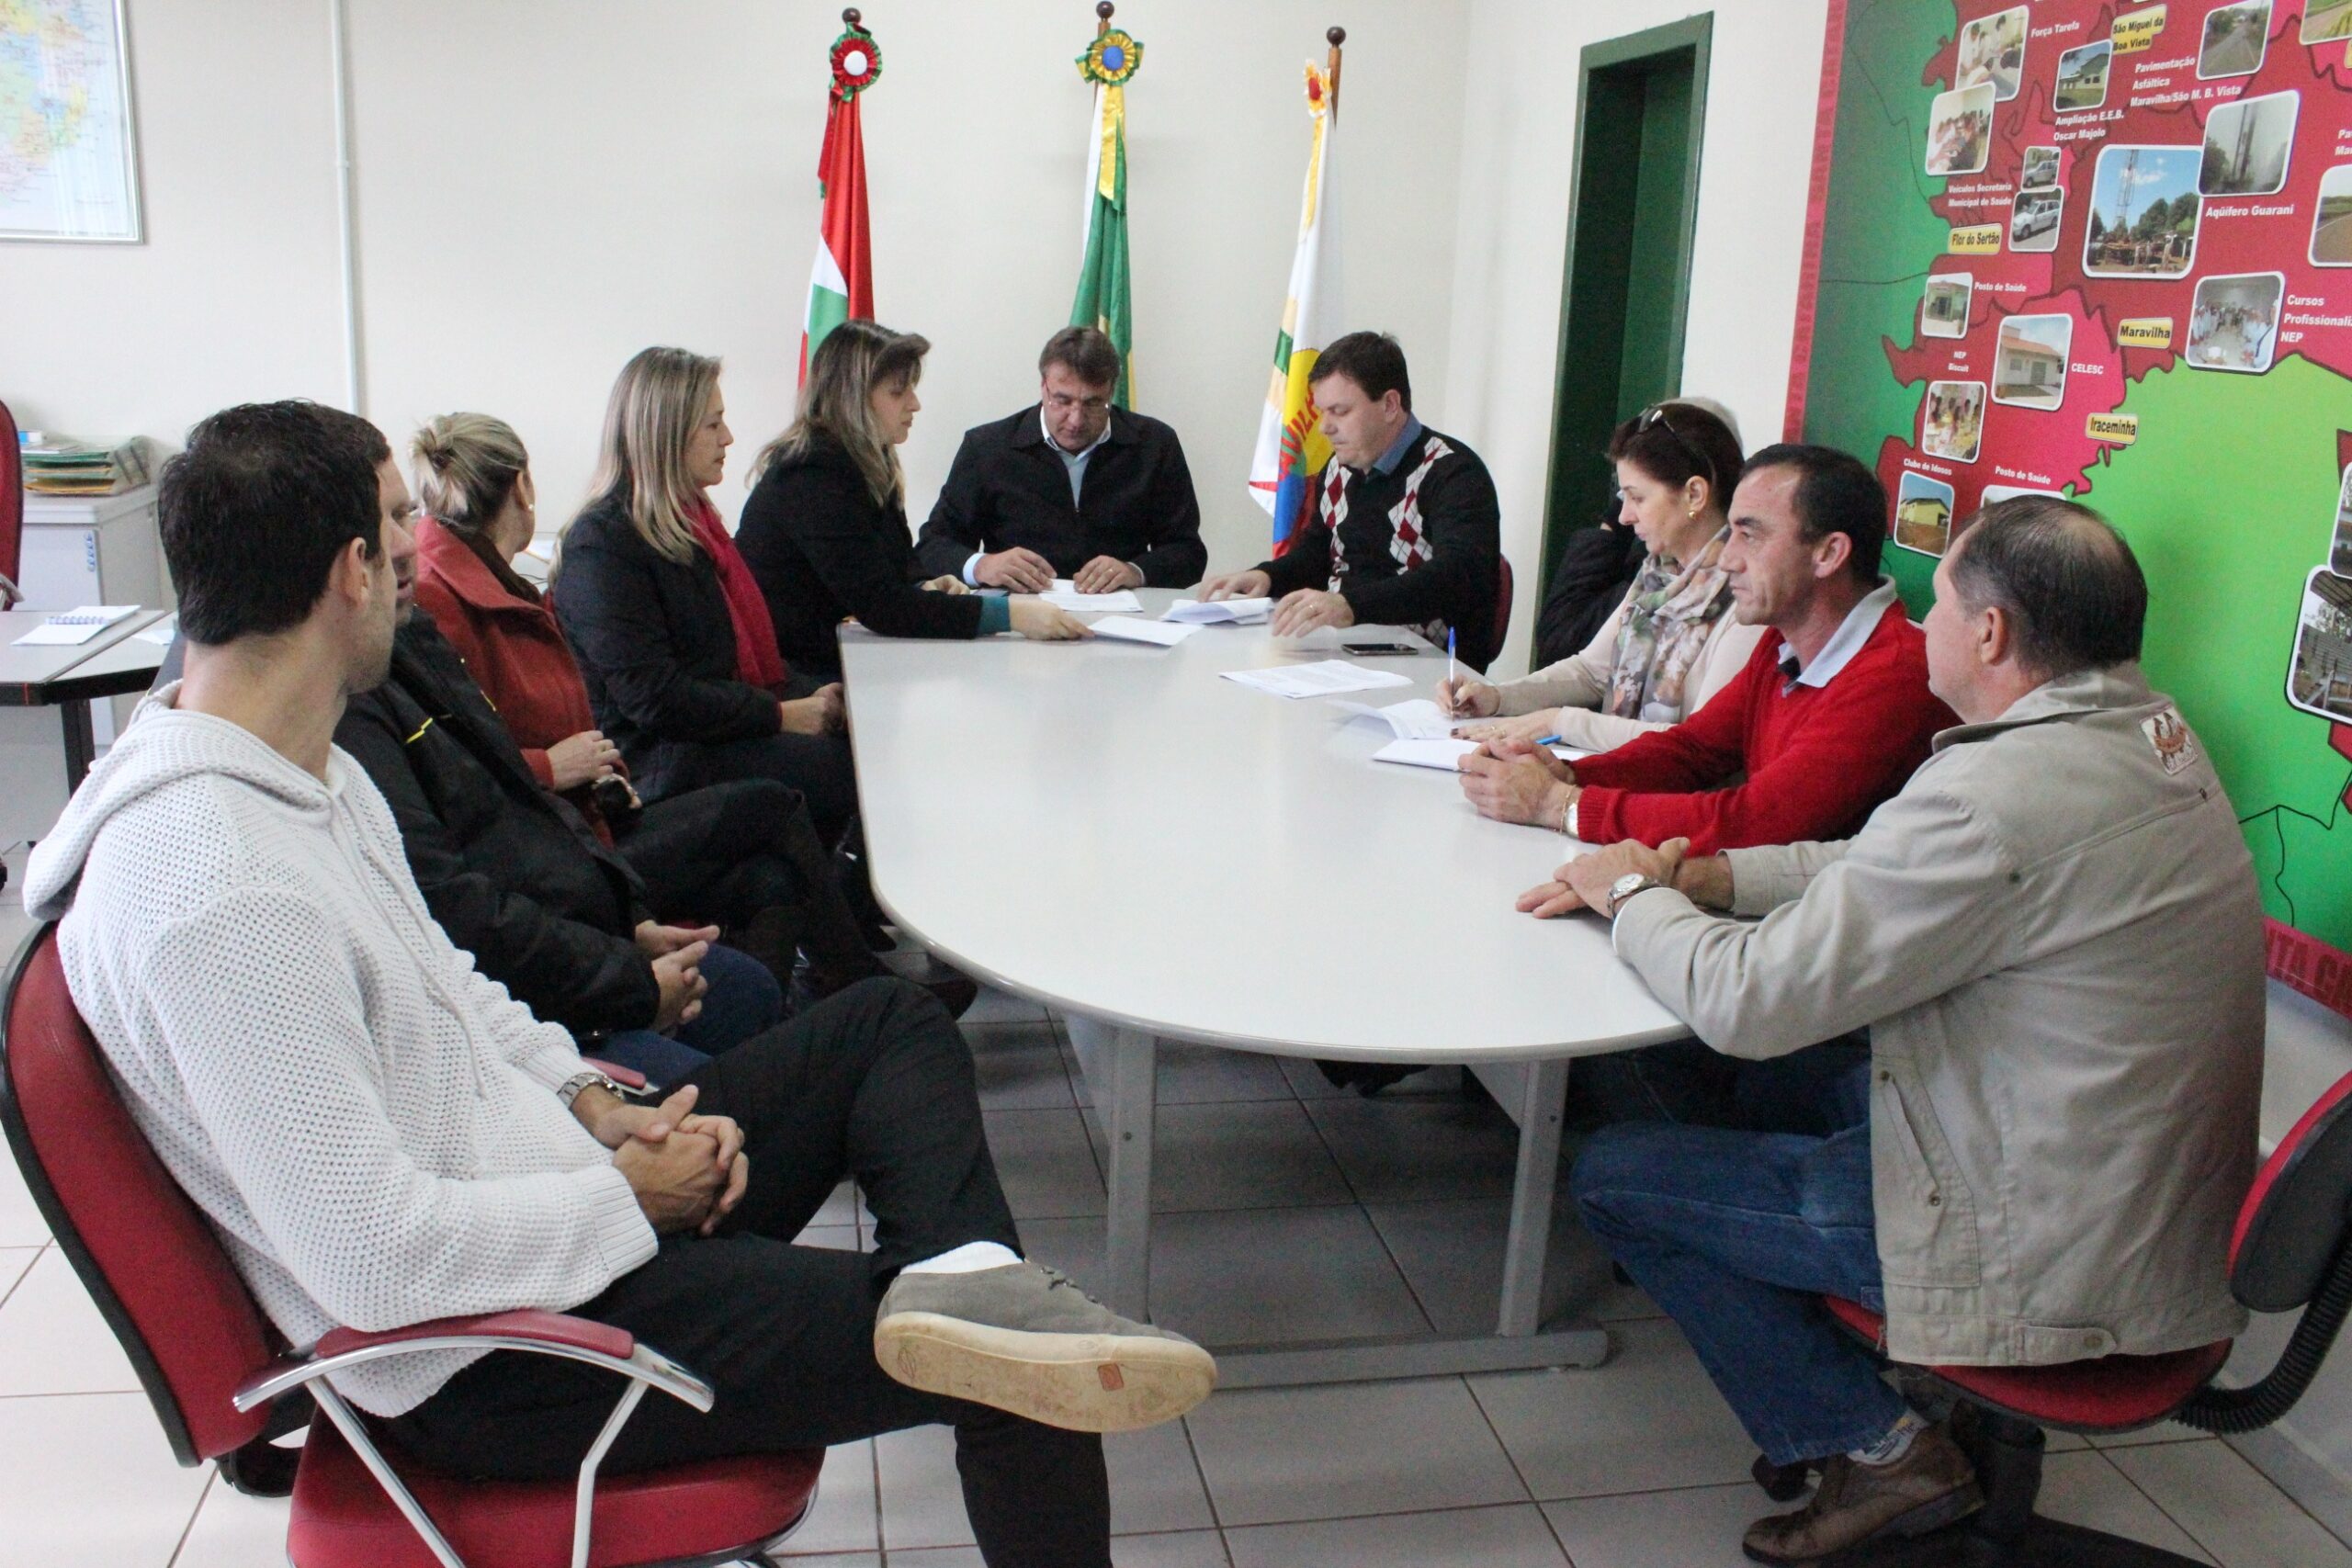 Representantes do município de Saudades e da ADR Maravilha assinaram o convênio para compra de equipamentos agrícolas